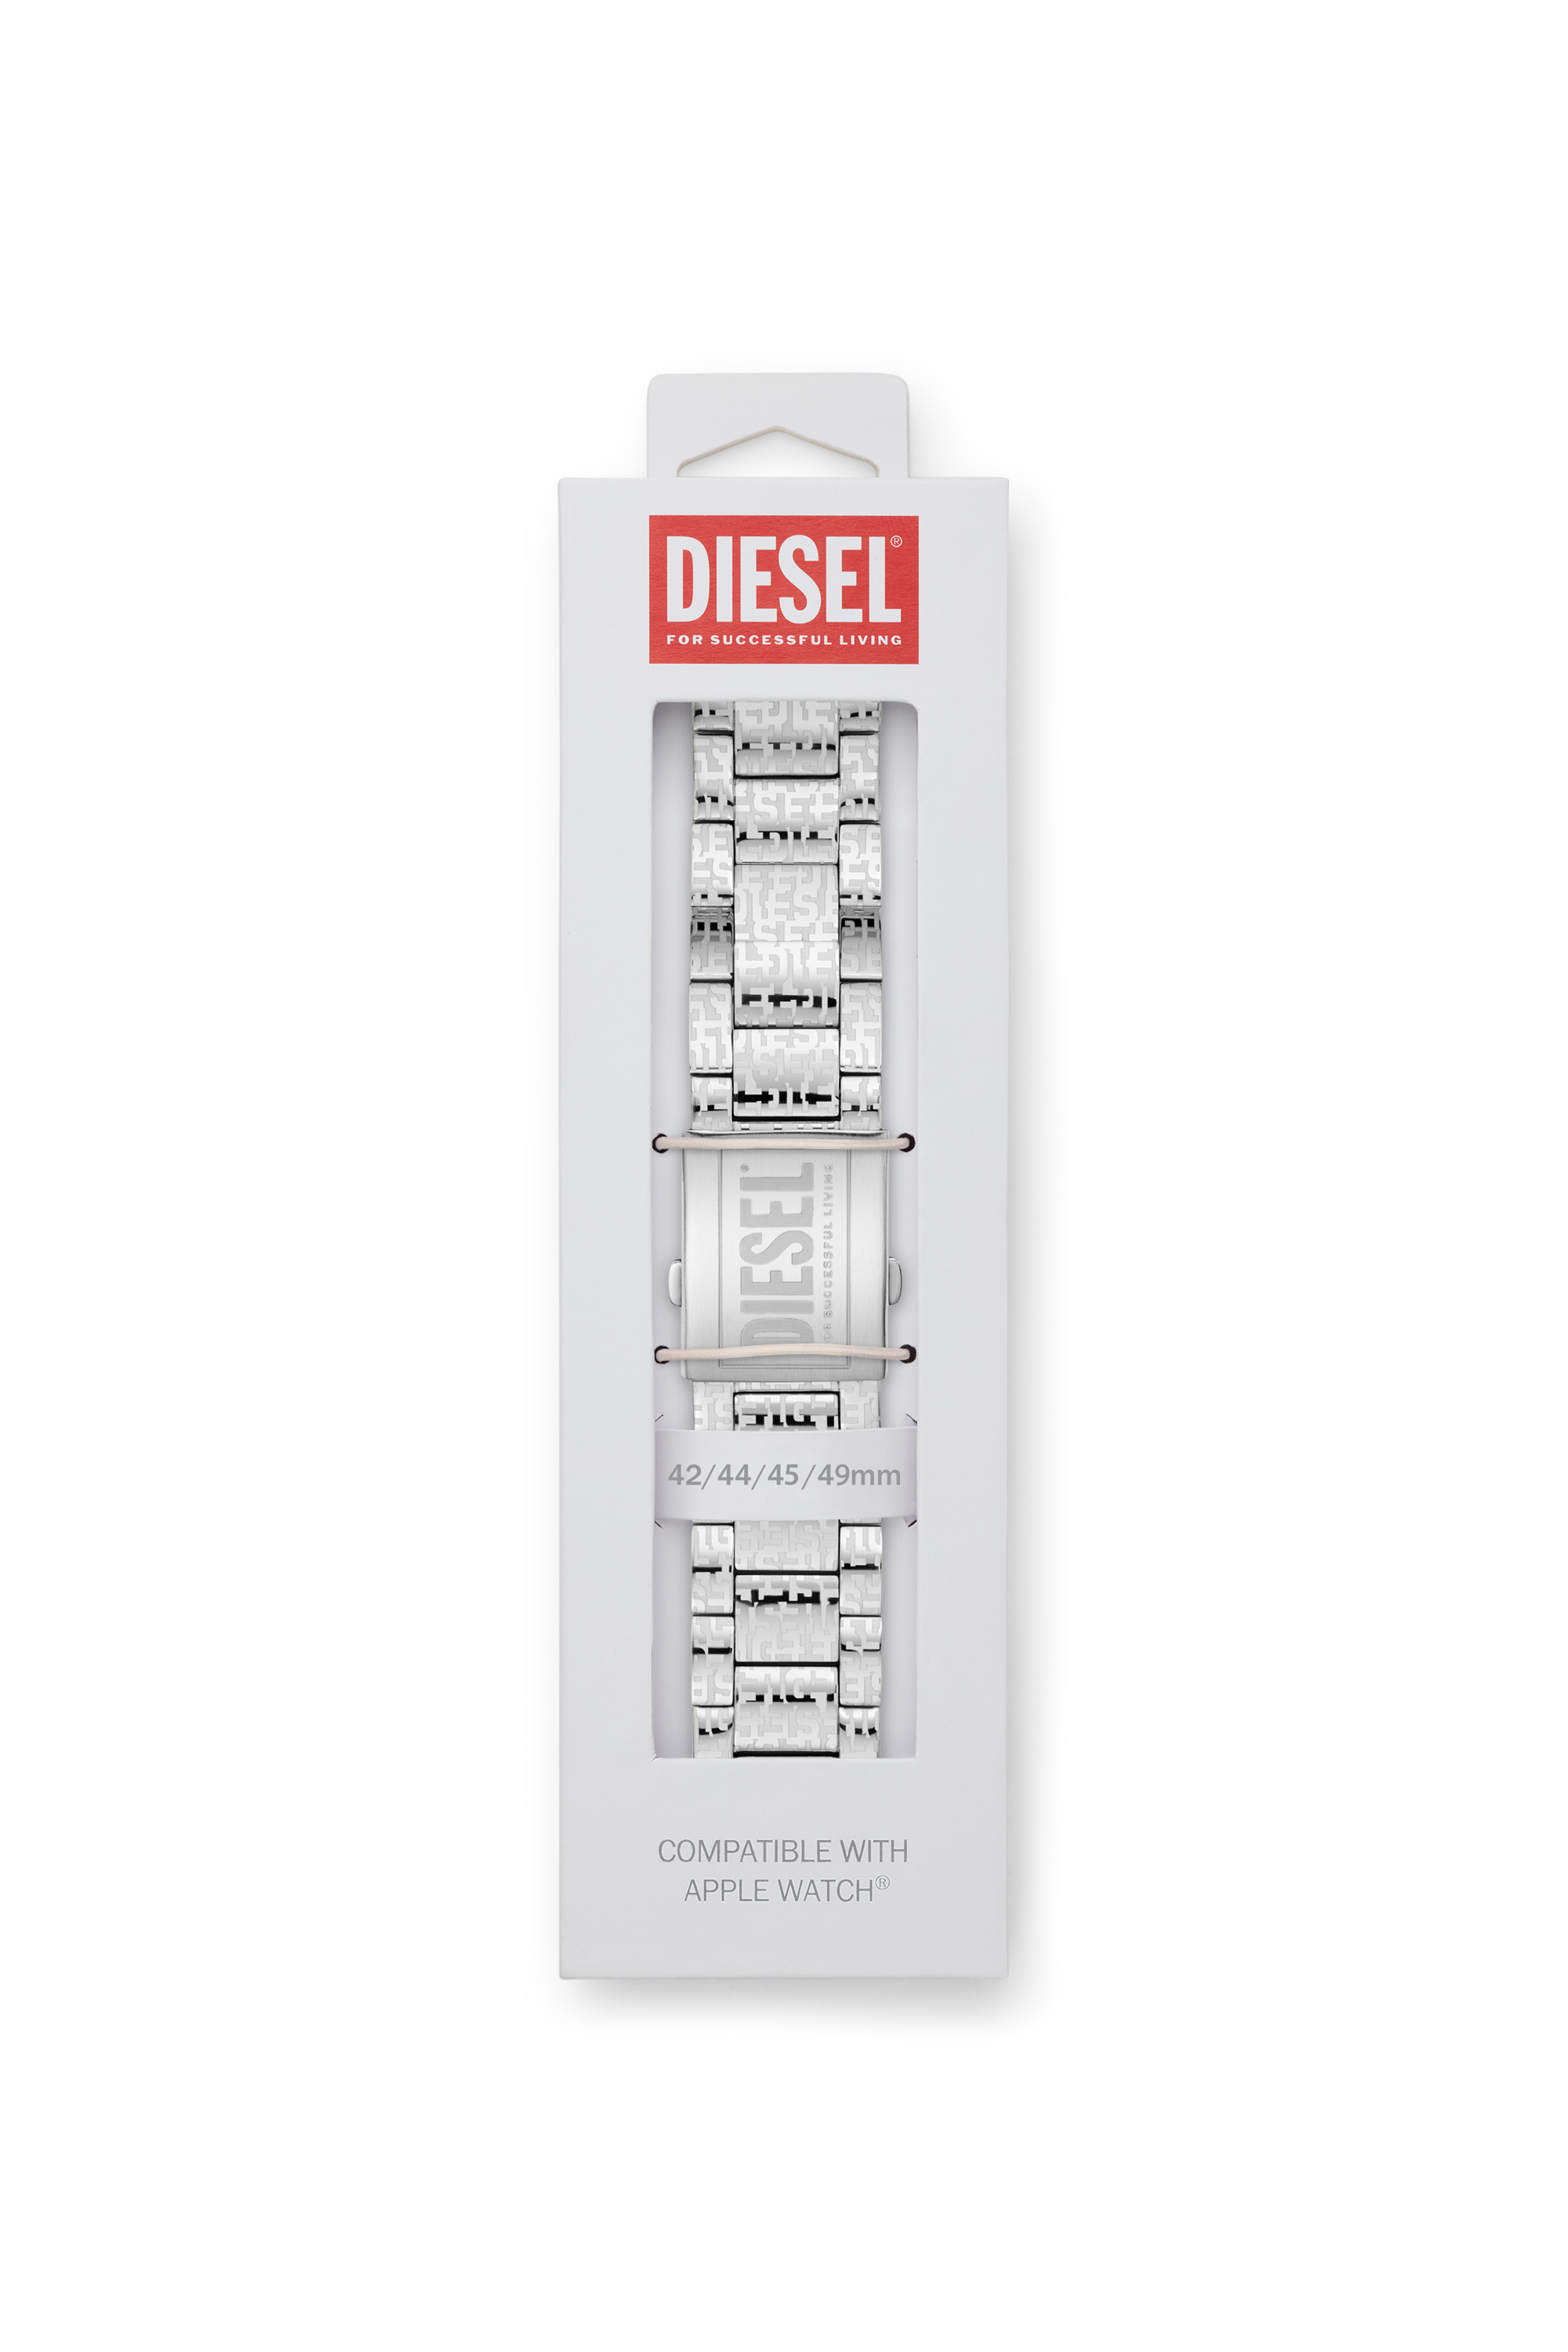 Diesel - DSS0017, Silber - Image 2